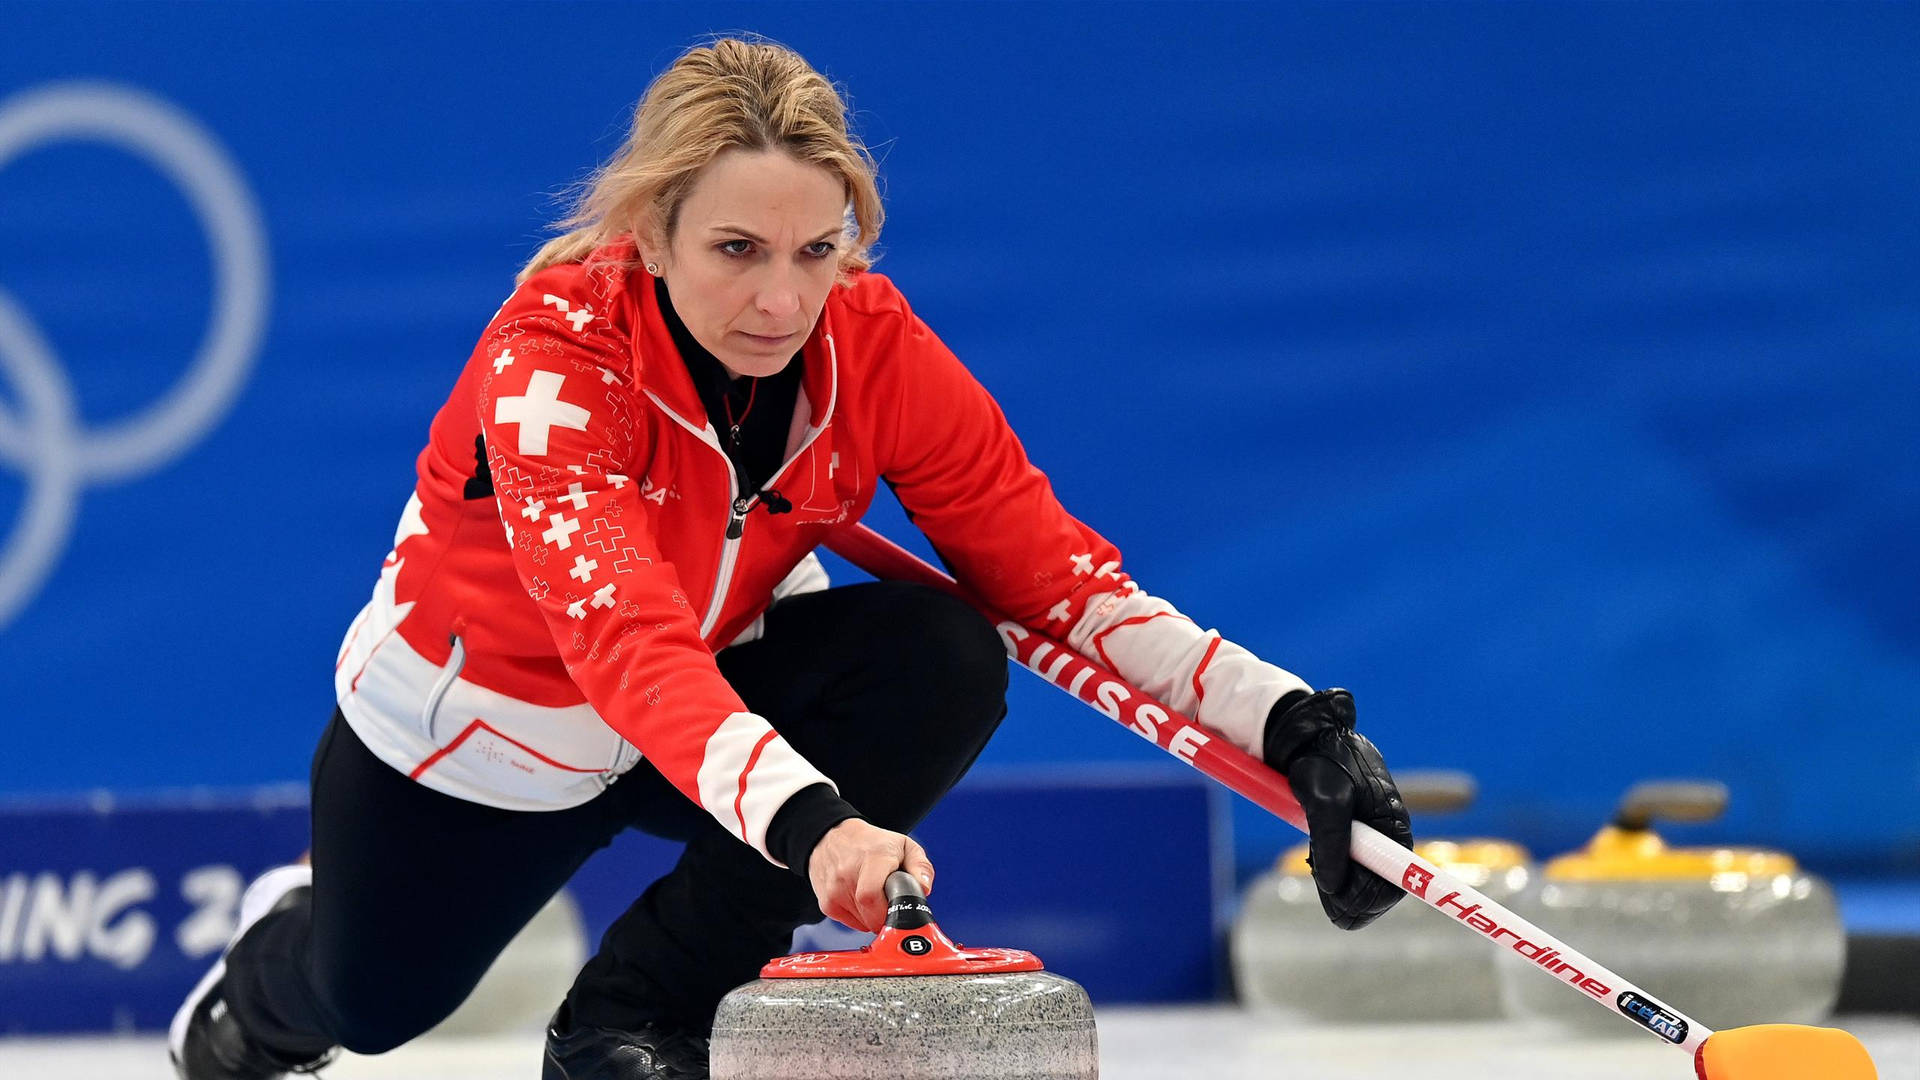 Switzerland Curling Team in Action Wallpaper